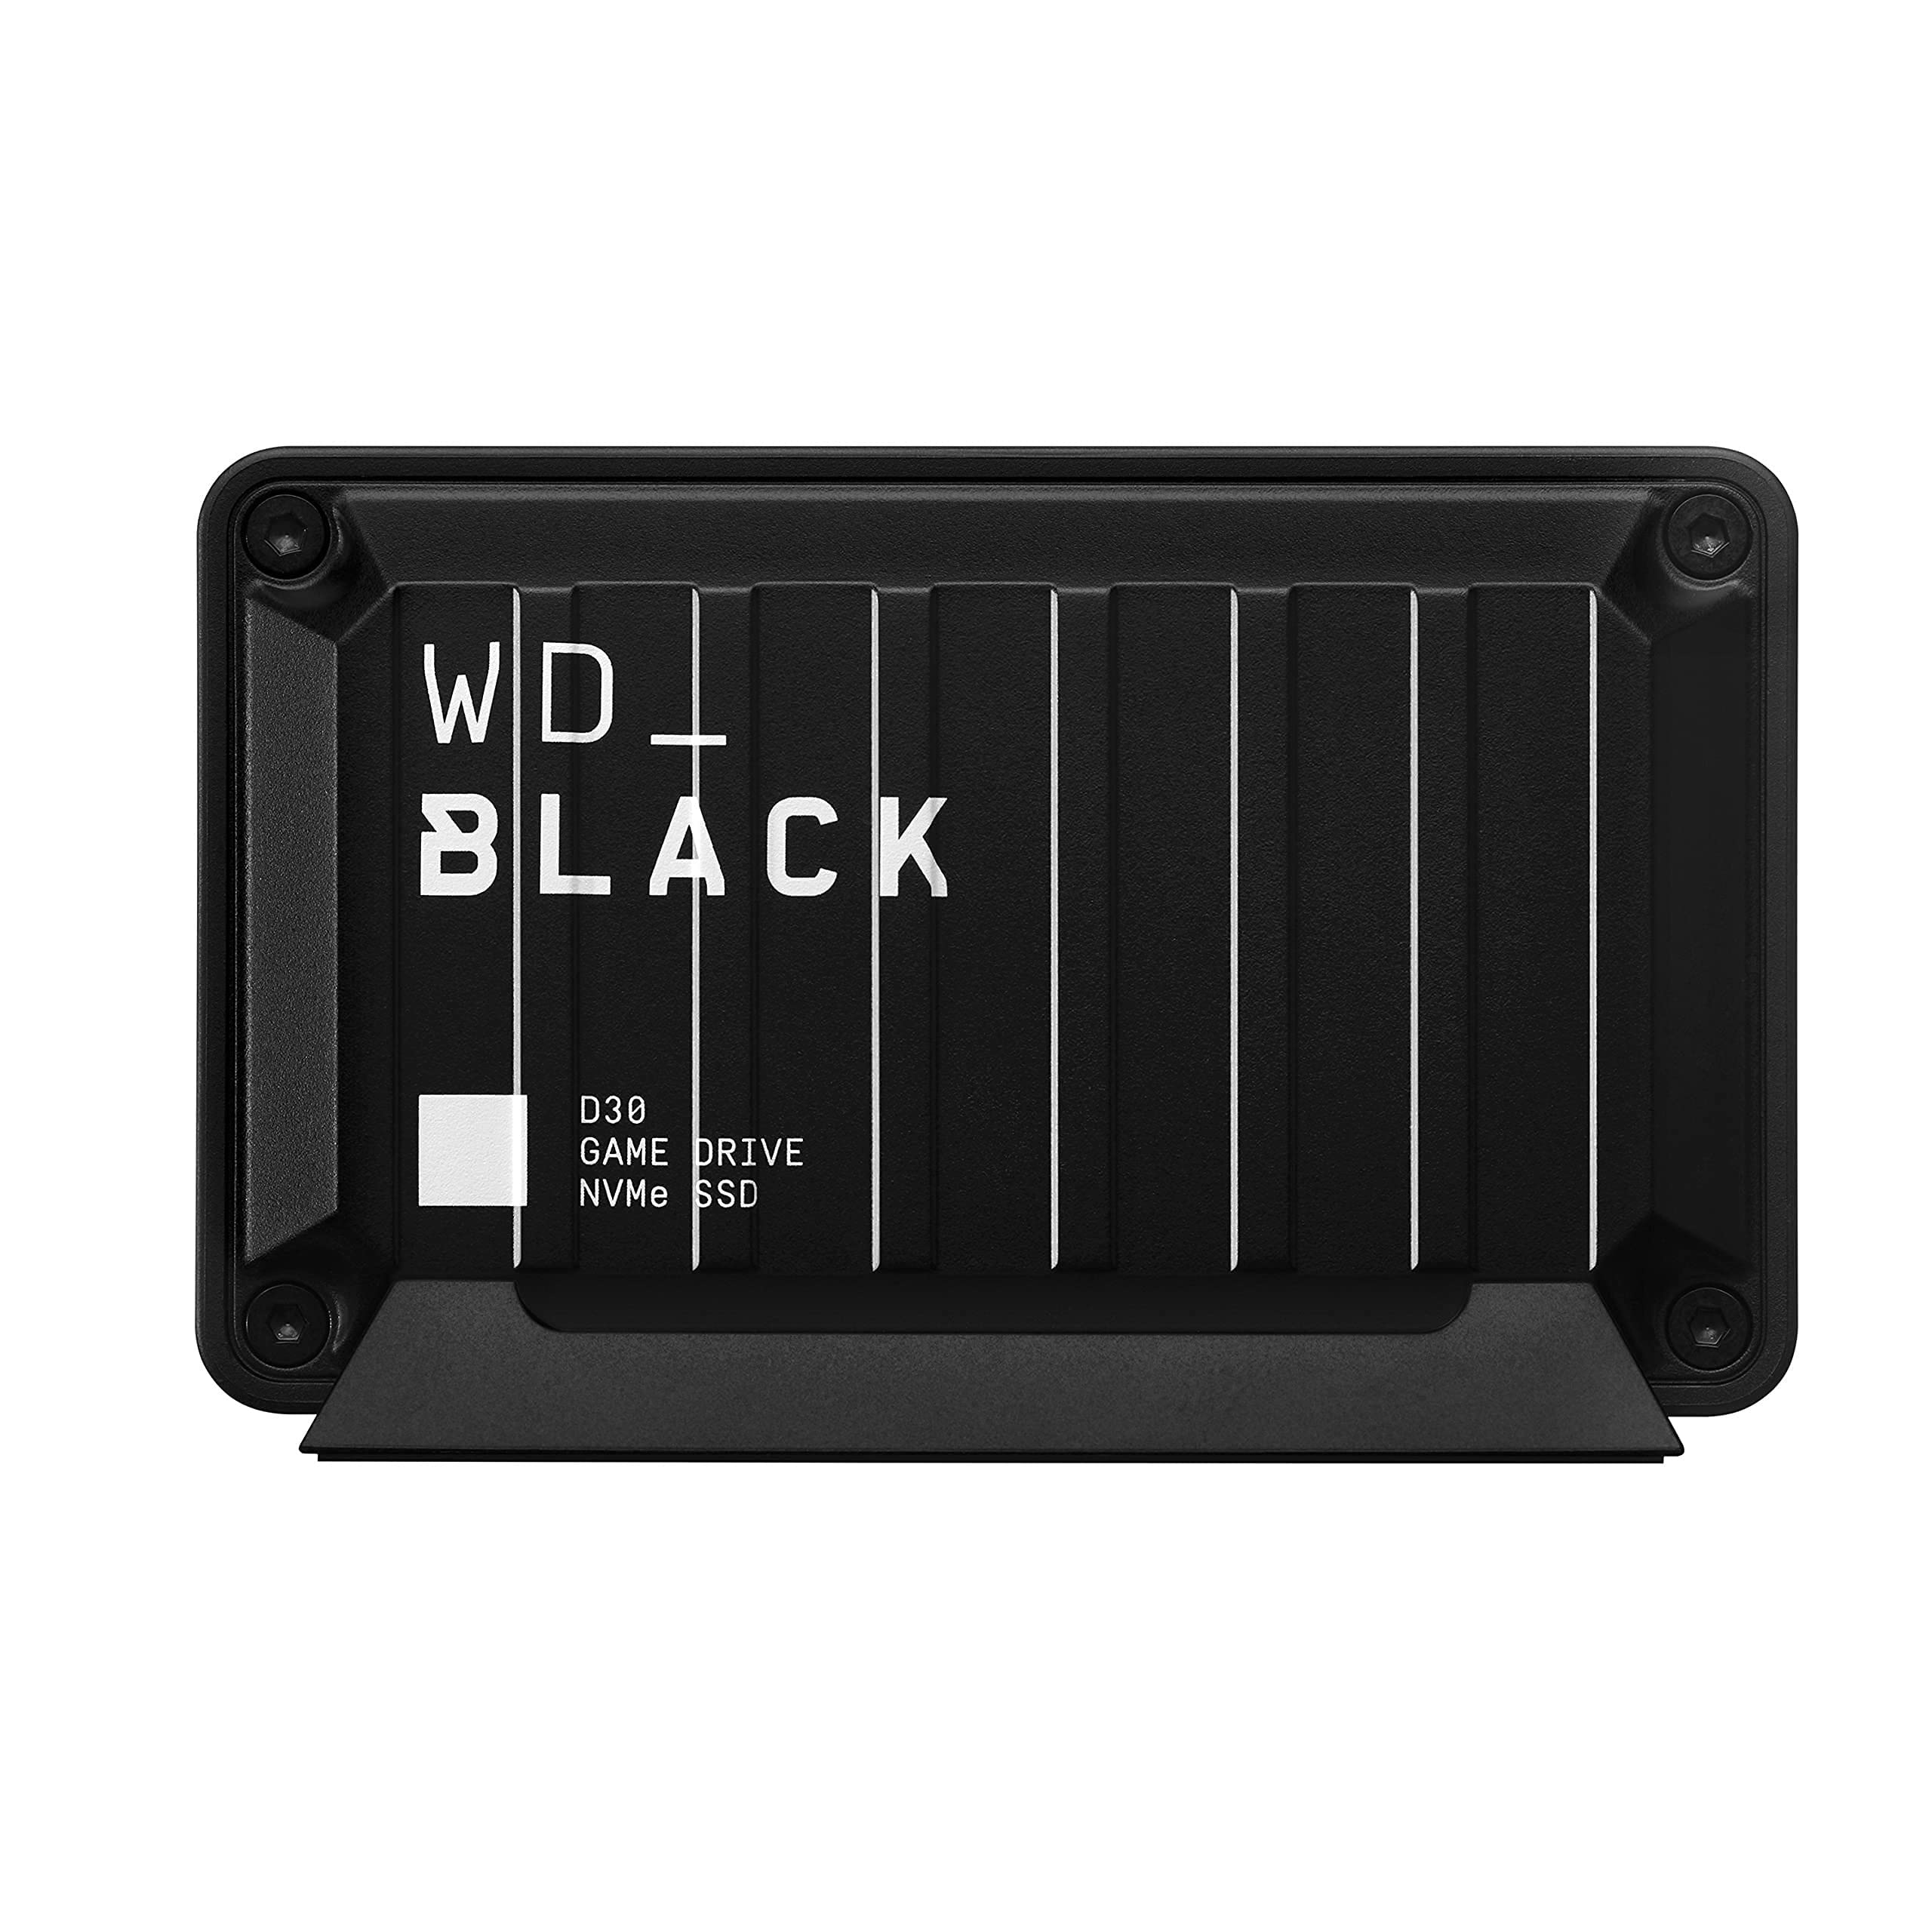 WD BLACK 2TB D30 GAME DRIVE SSD